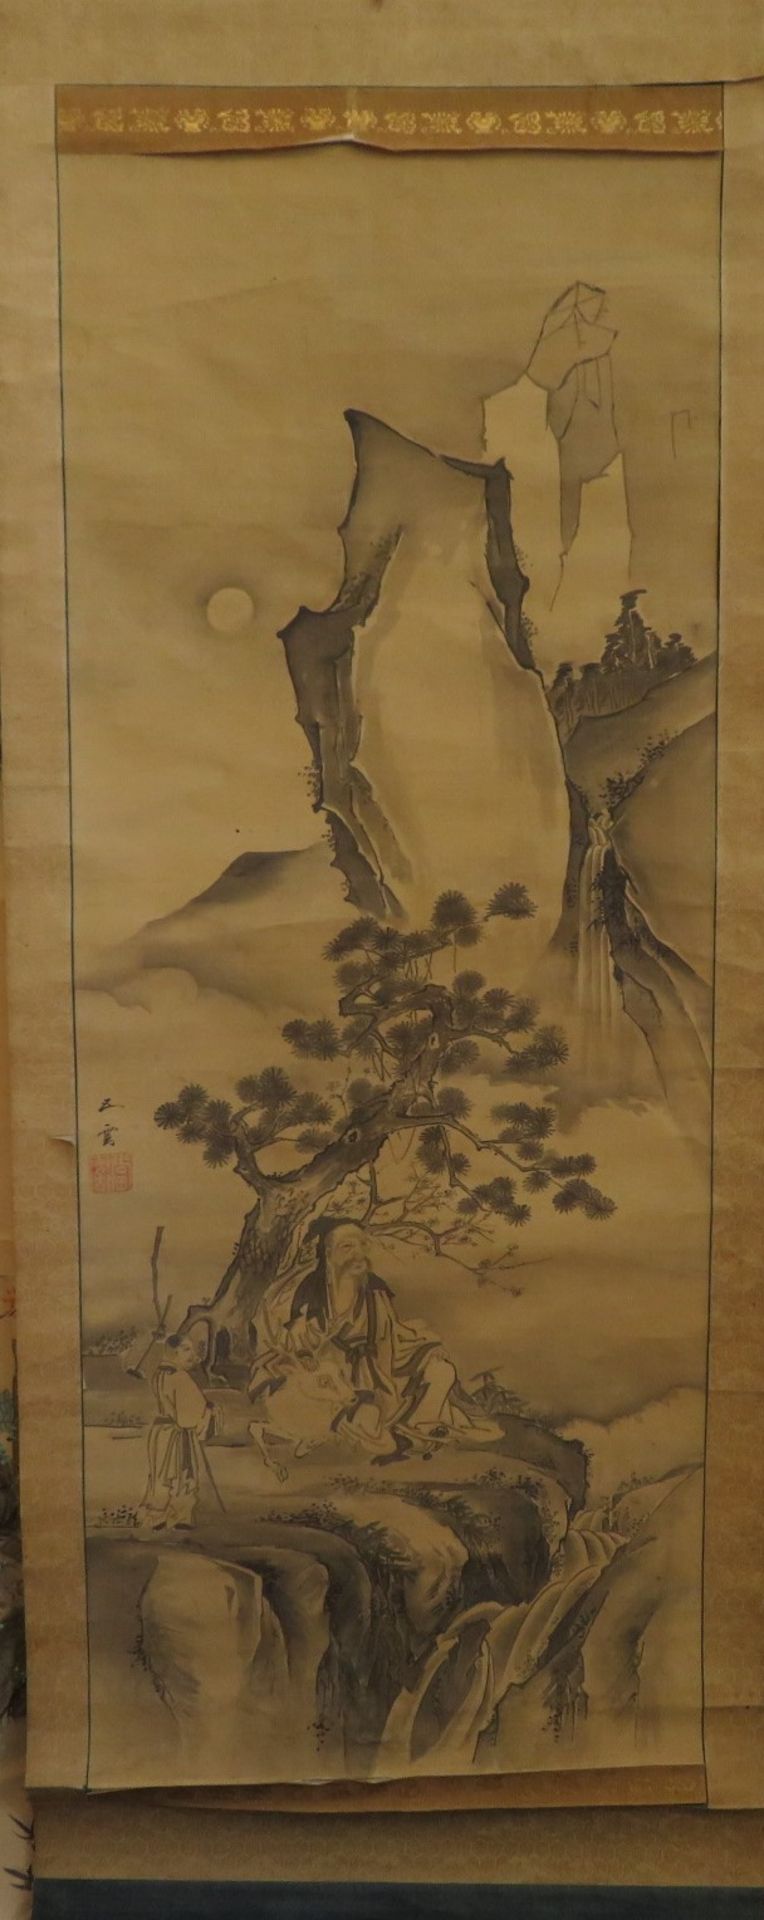 Rollbild, China, "Gelehrter unter Baum in bergiger Landschaft", Seidenmalerei, sign., 98 x 37,5 cm.